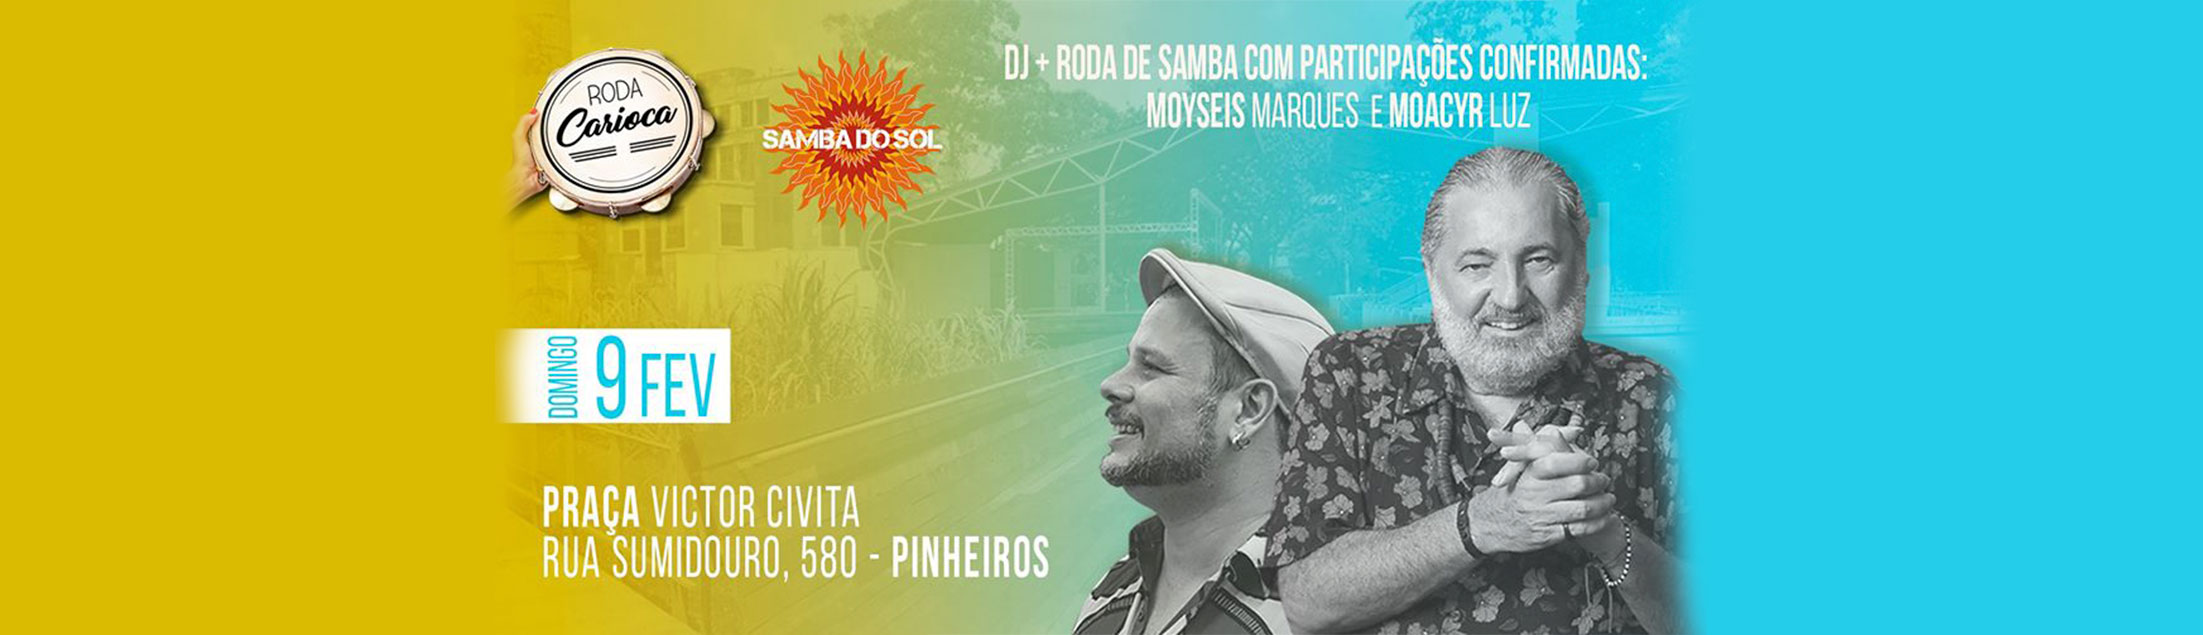 Roda Carioca e Samba do Sol com Moacyr Luz e Moyseis Marques